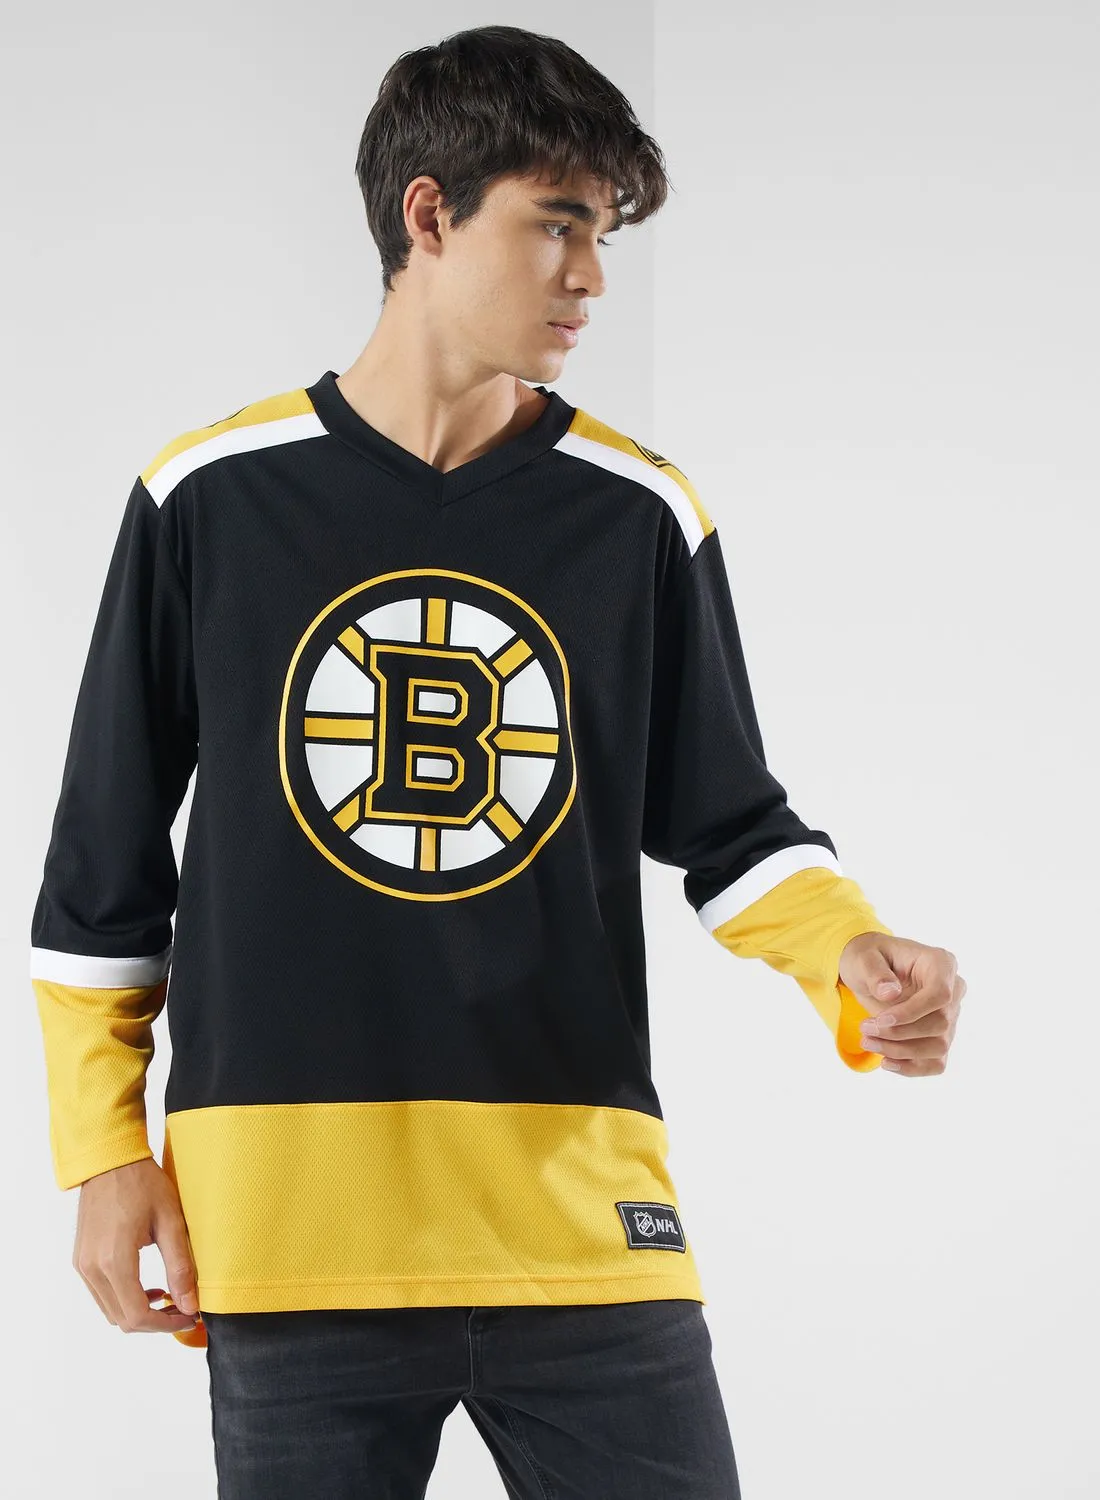 Fanatics Nhl Boston Bruins Jersey